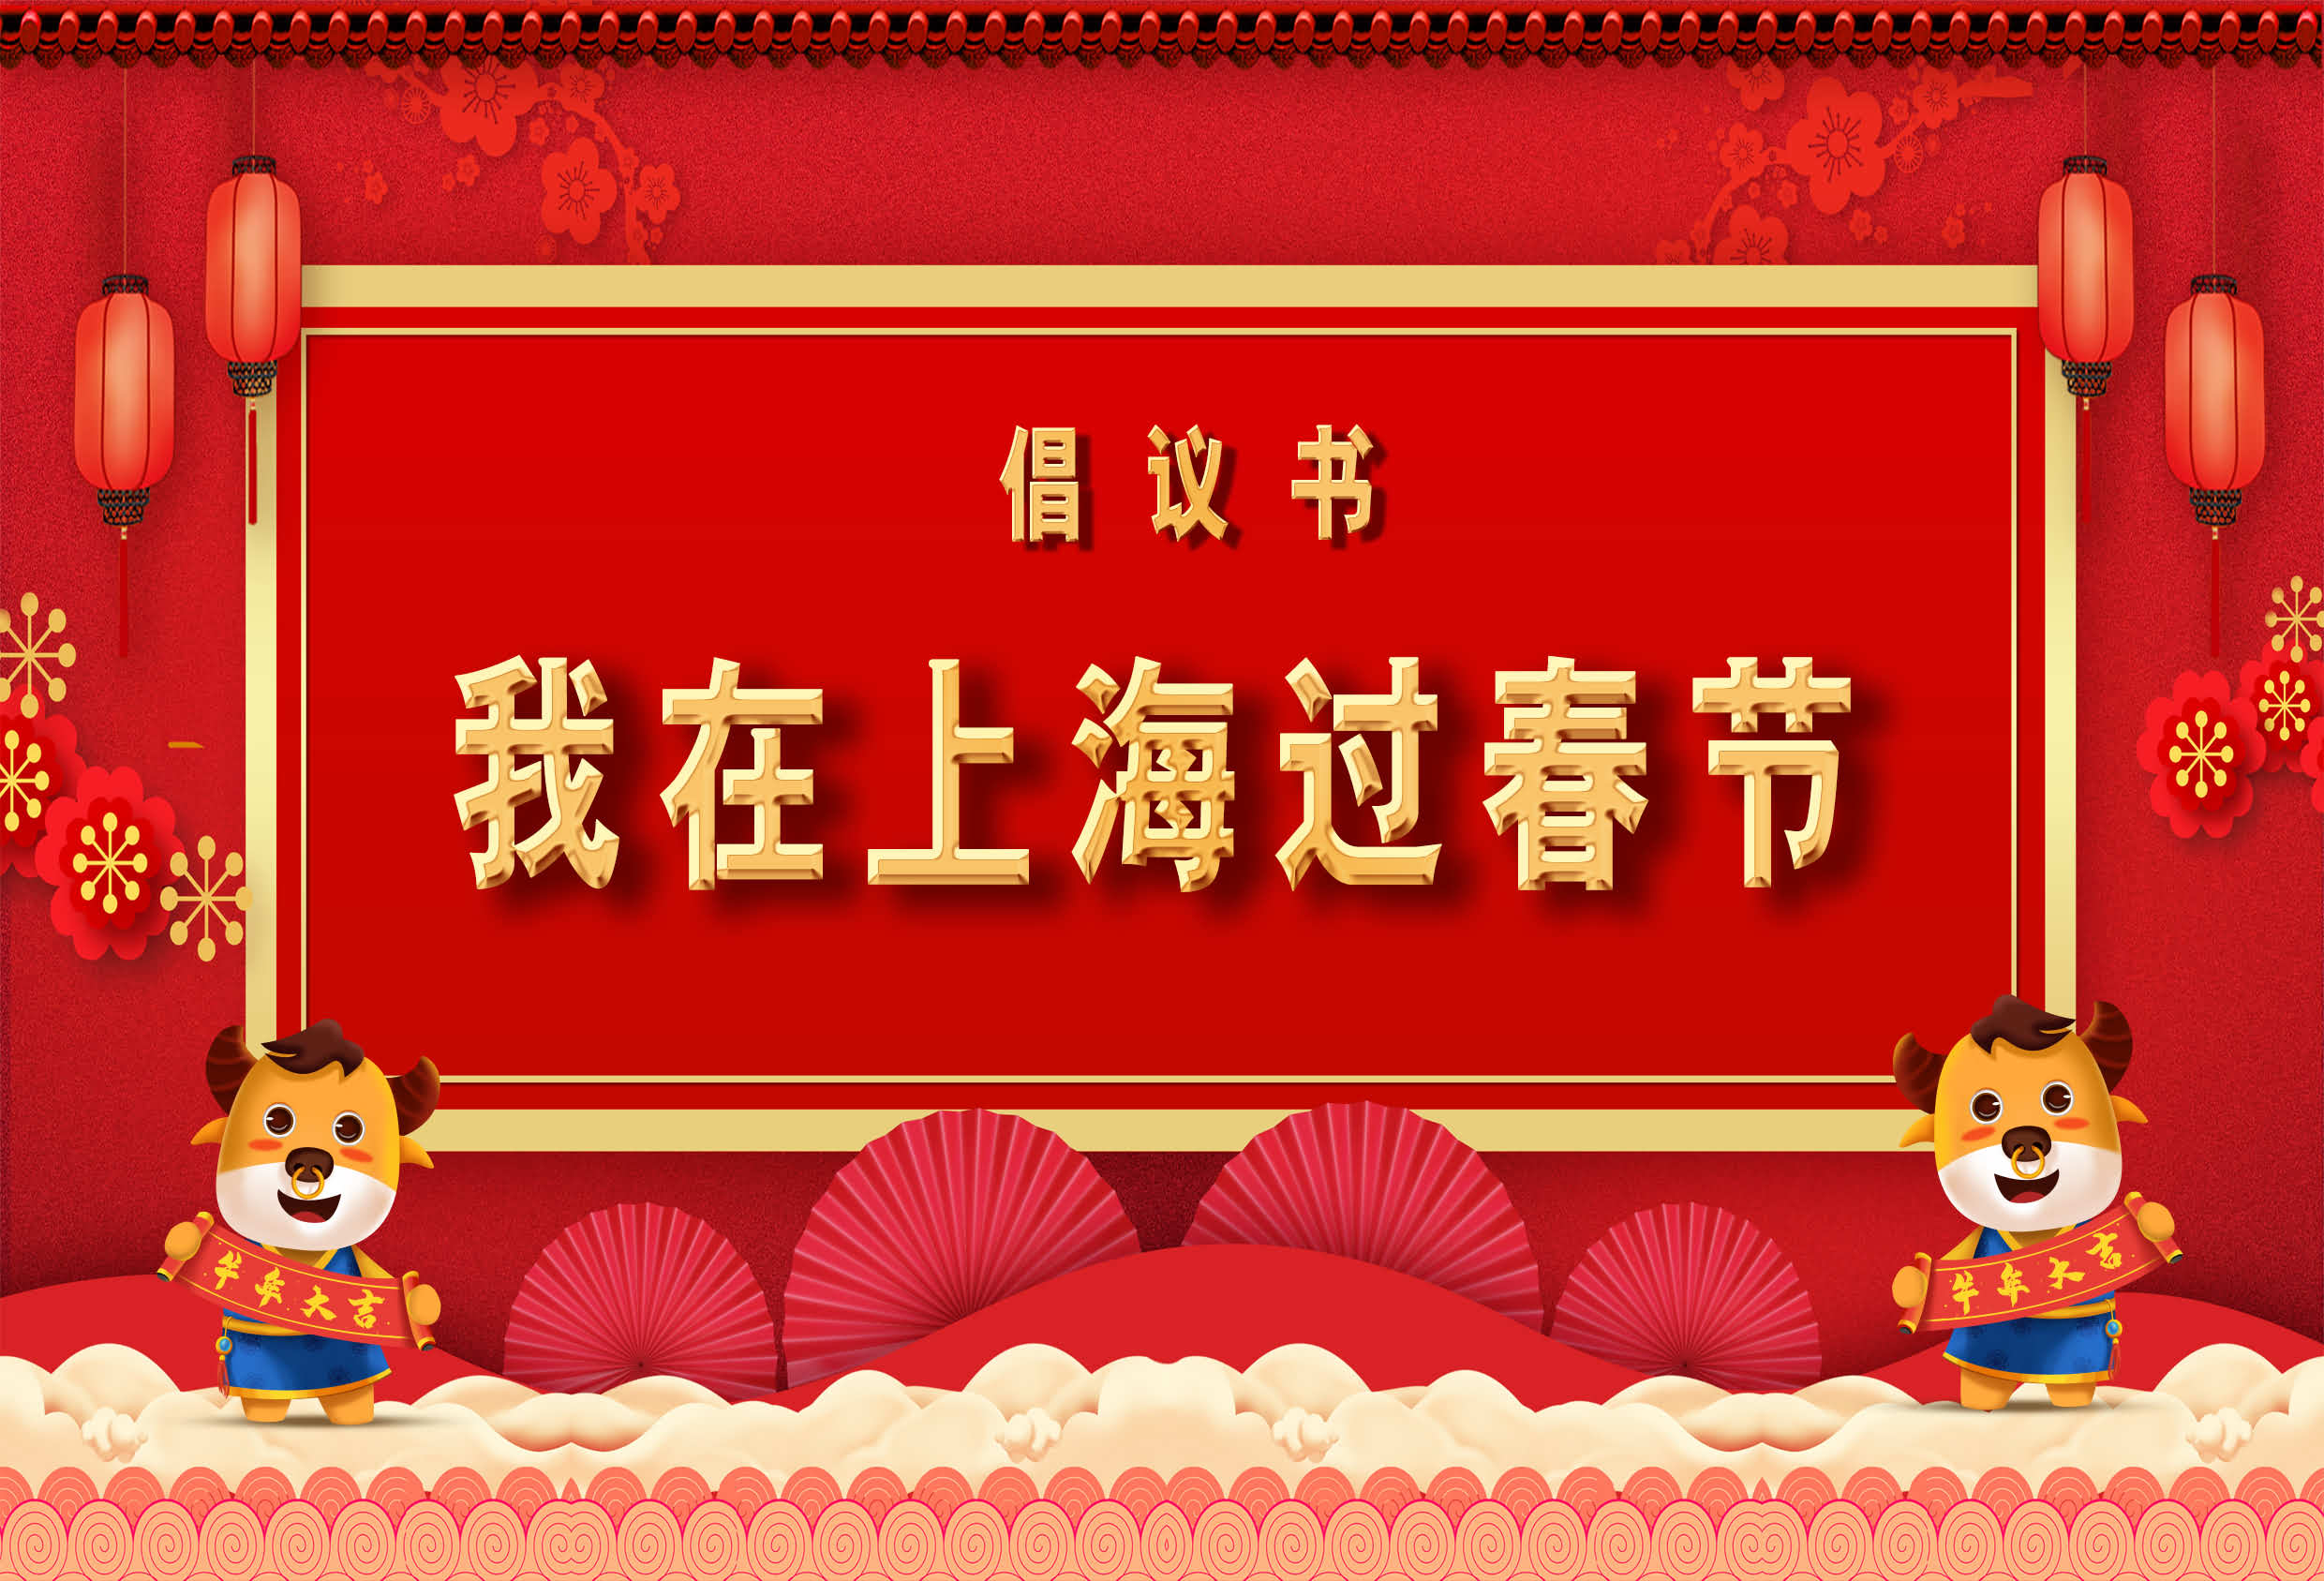 上海远驰专修学院发起“我在上海过春节”倡议活动